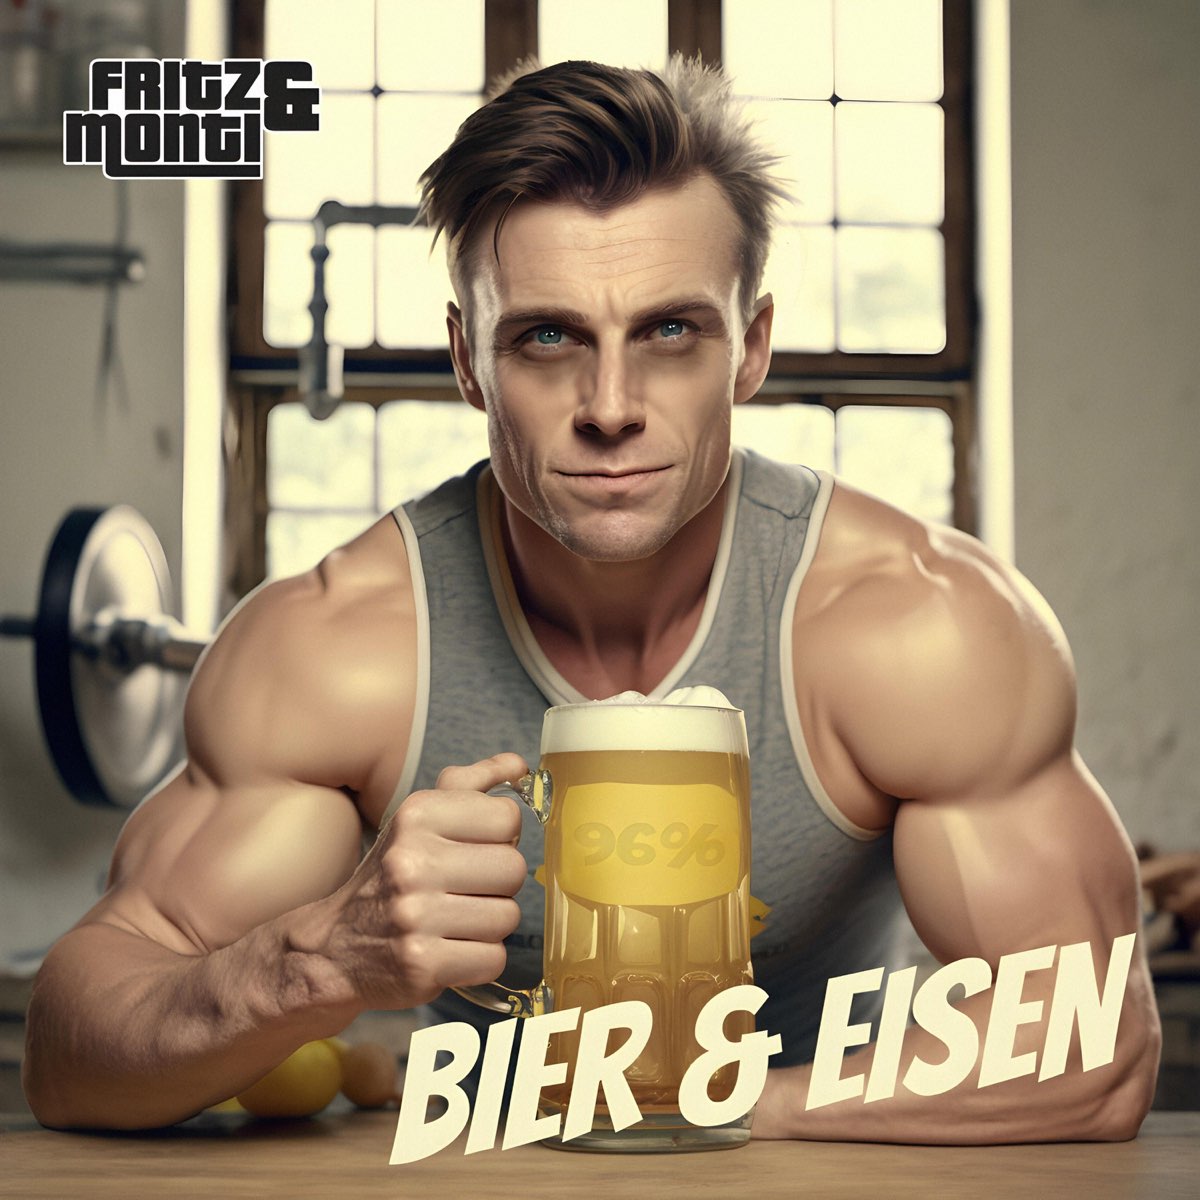 ‎bier Und Eisen Single By Fritz Und Monti On Apple Music 